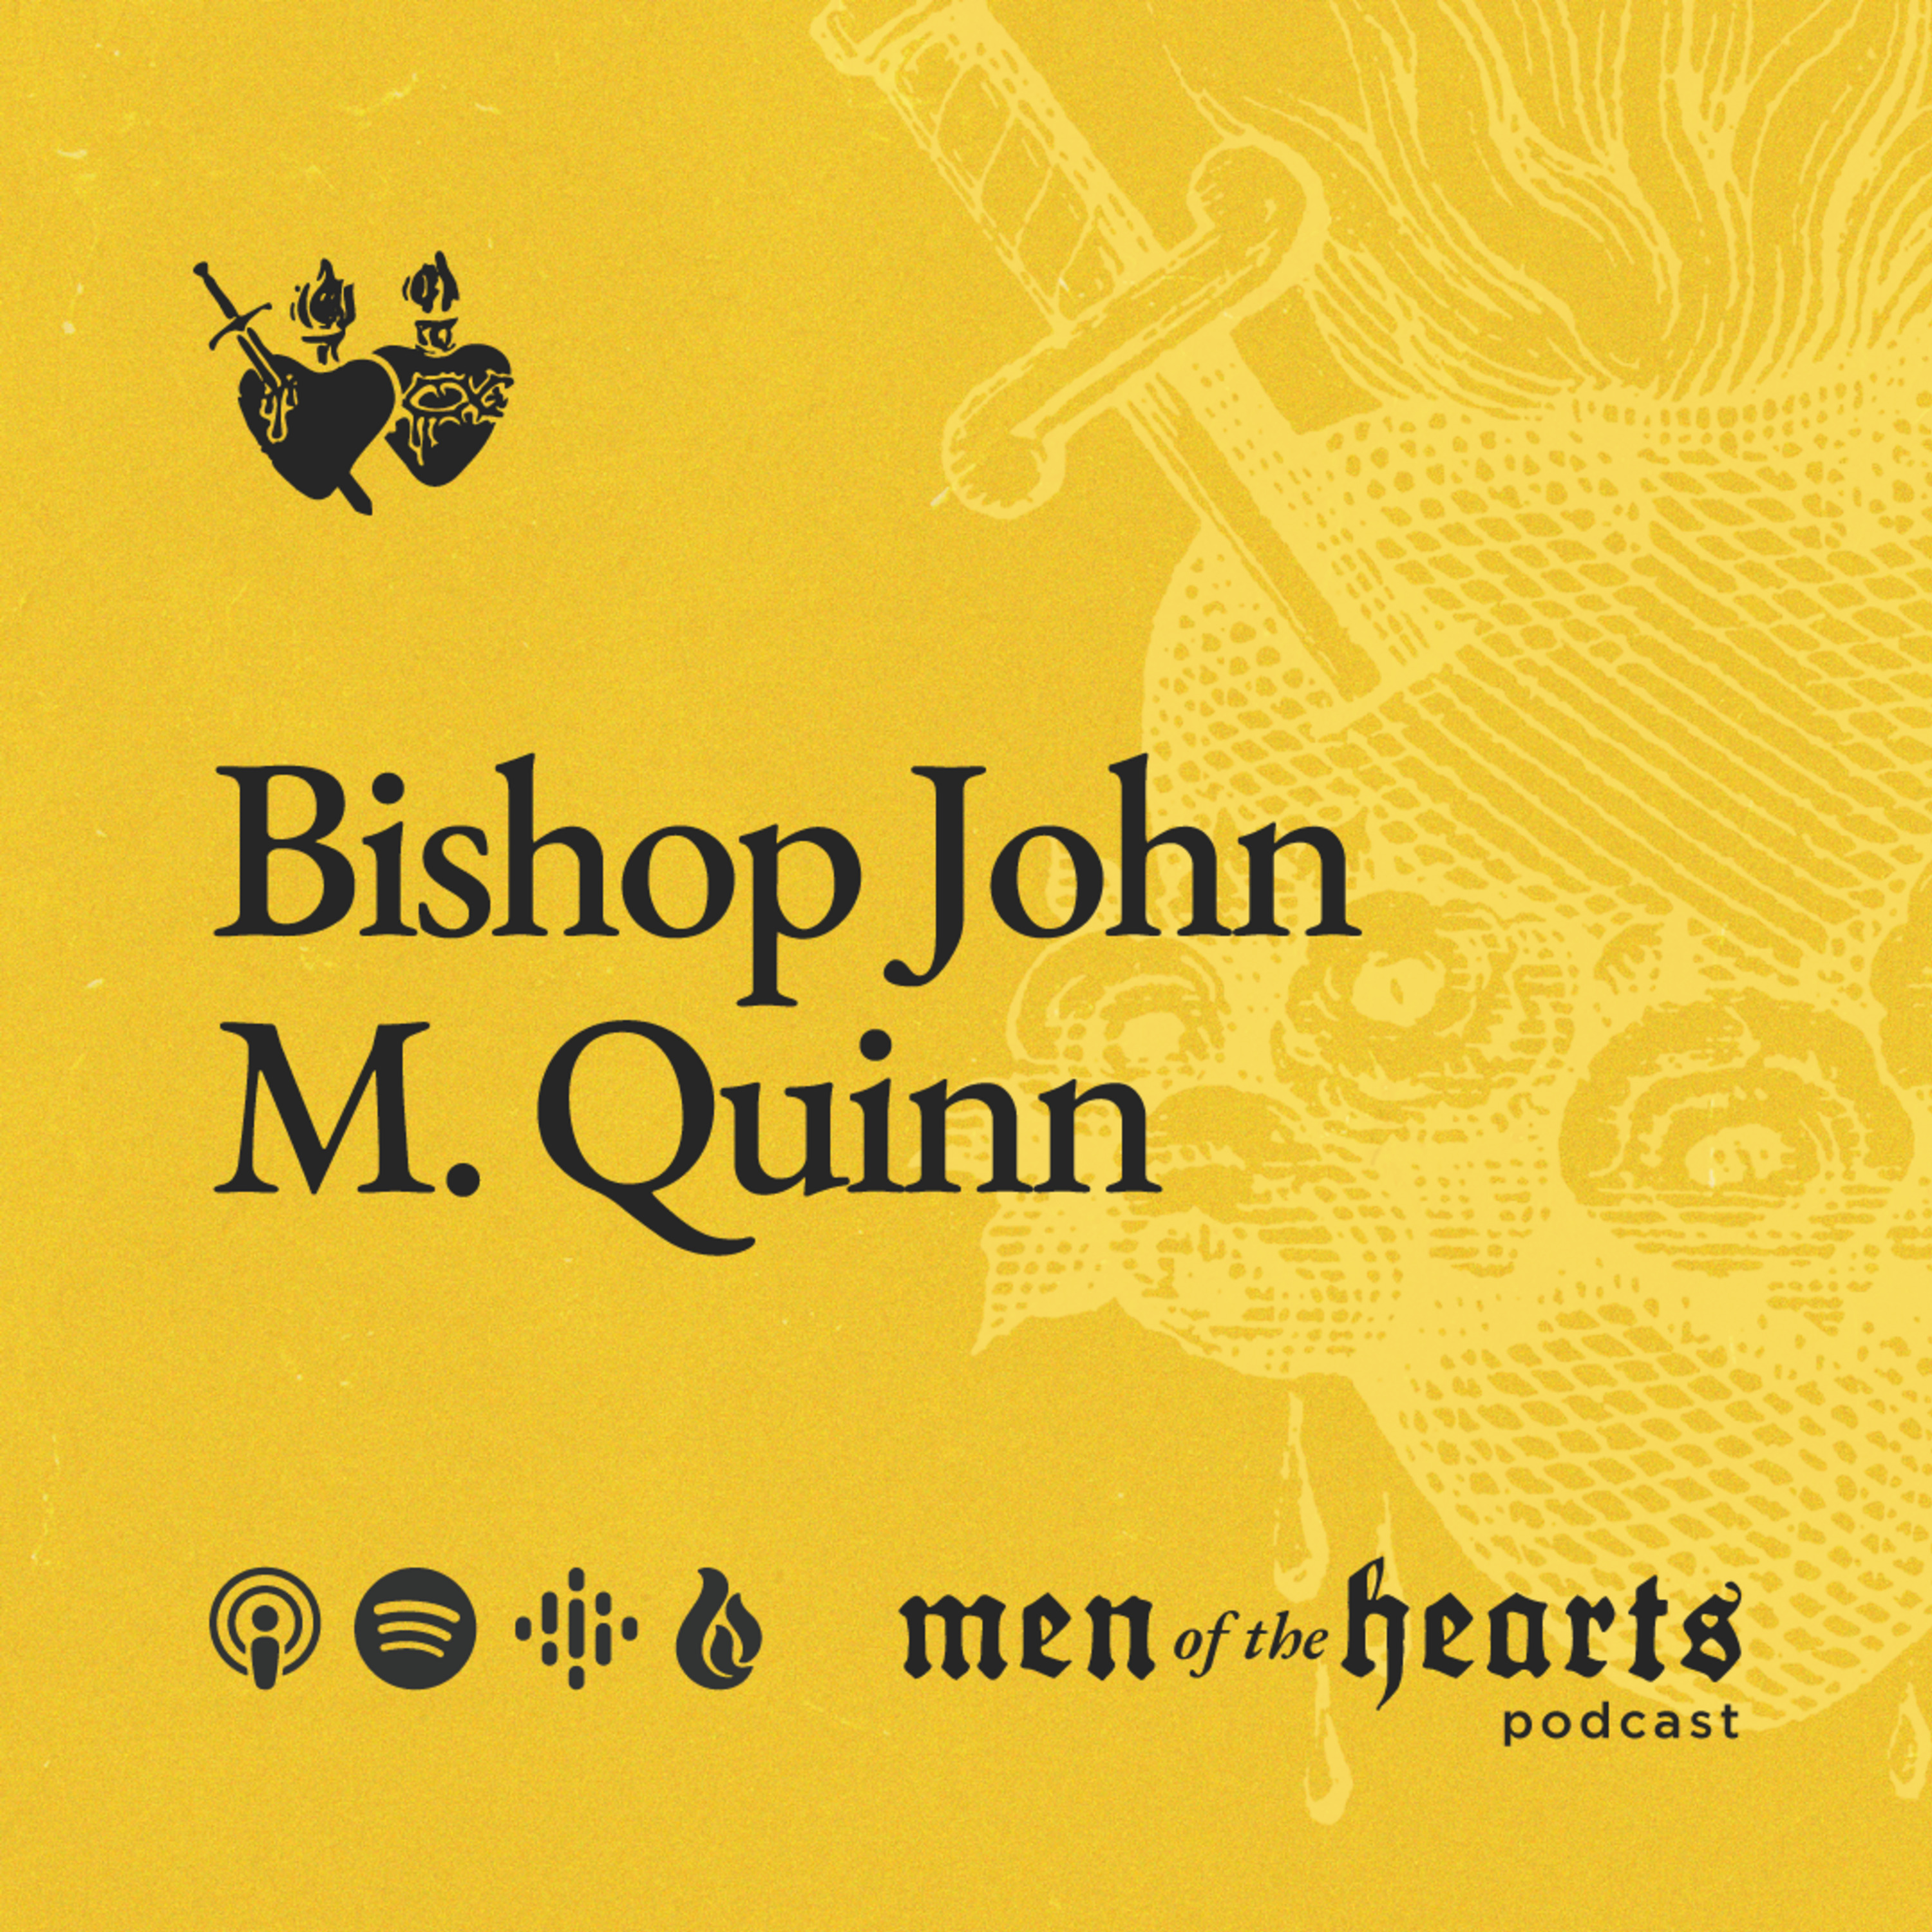 Bishop John M. Quinn